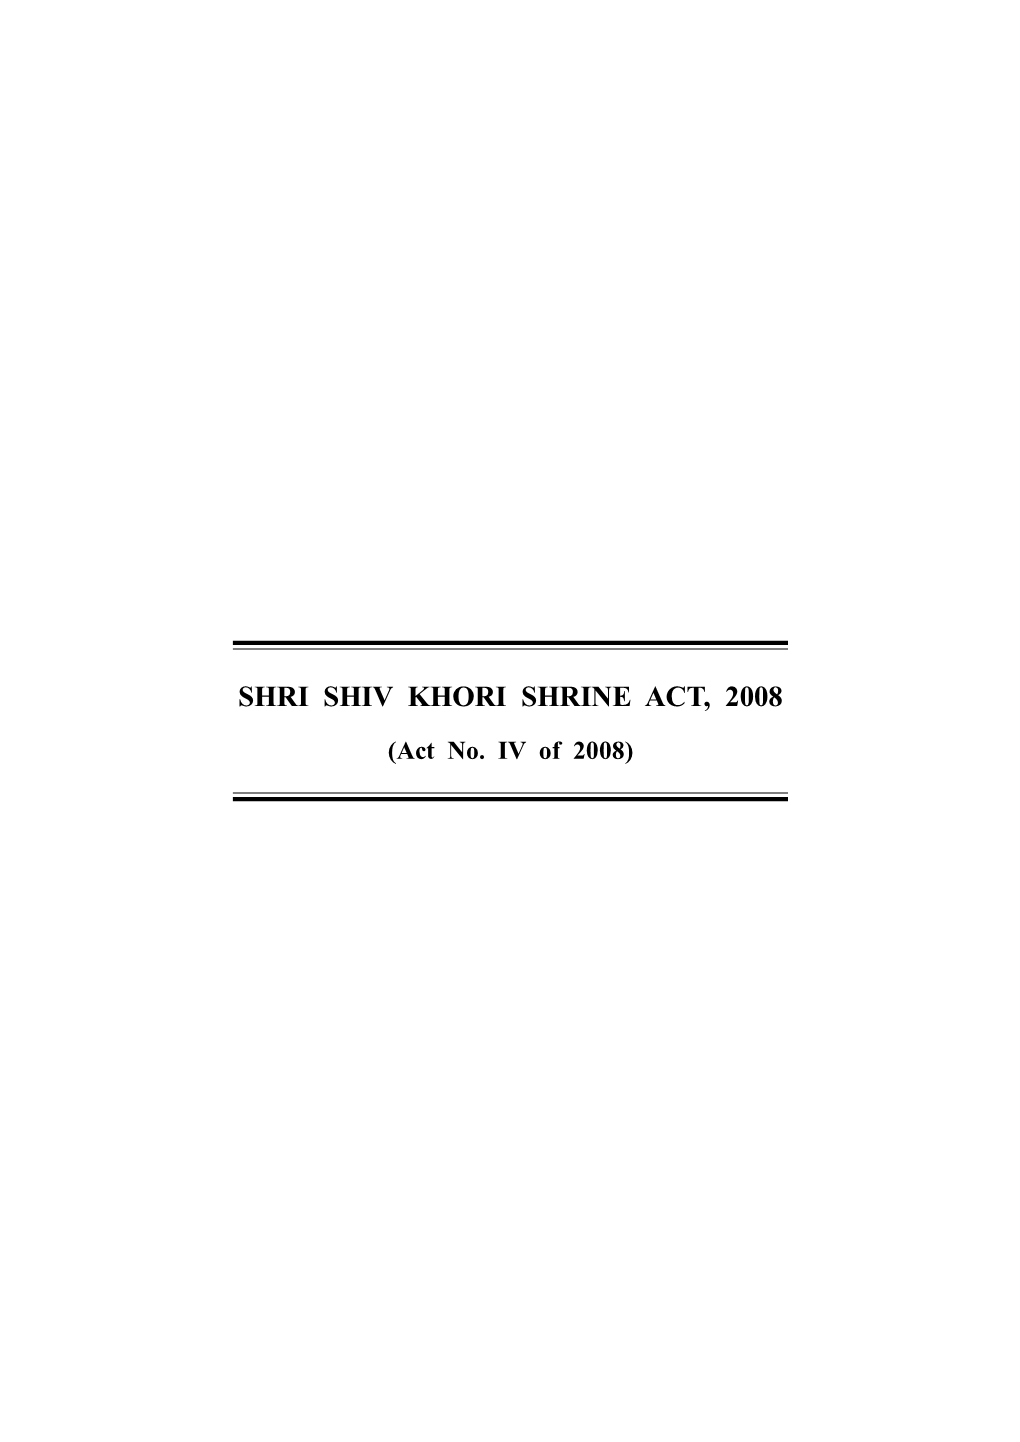 Shri Shiv Khori Shrine Act, 2008